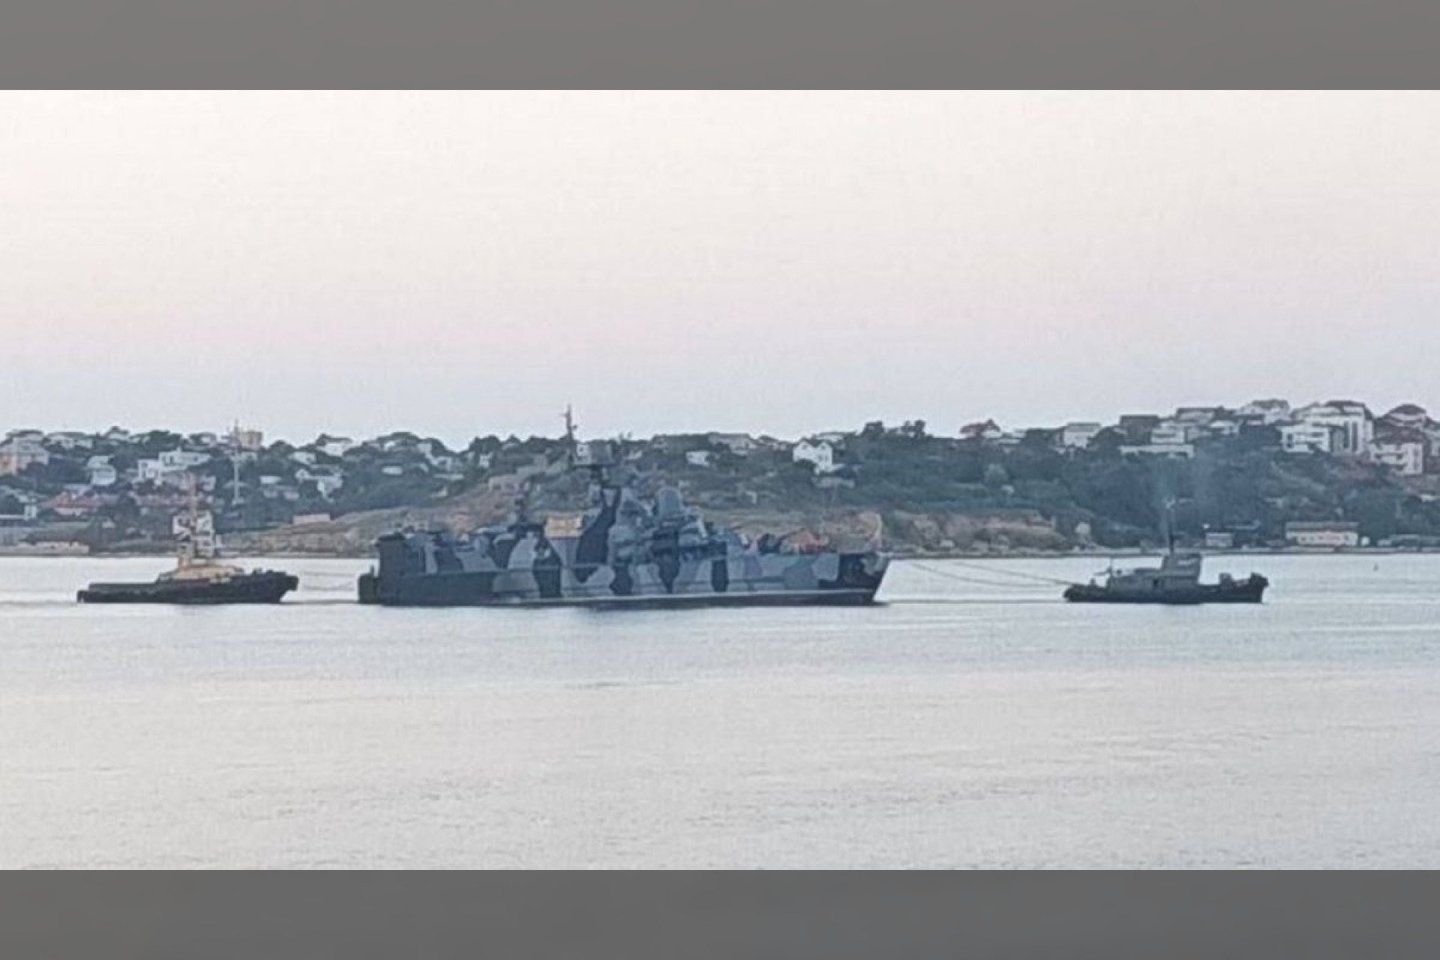  Internete pasirodė nauja „Projekto 1239“ korvetės „Samum“ nuotrauka. Šį karo laivą rugsėjo 14 d. atakavo ukrainiečių karinio jūrų laivyno savižudis dronas „SeaBaby“.<br> Atvirųjų šaltinių nuotr.